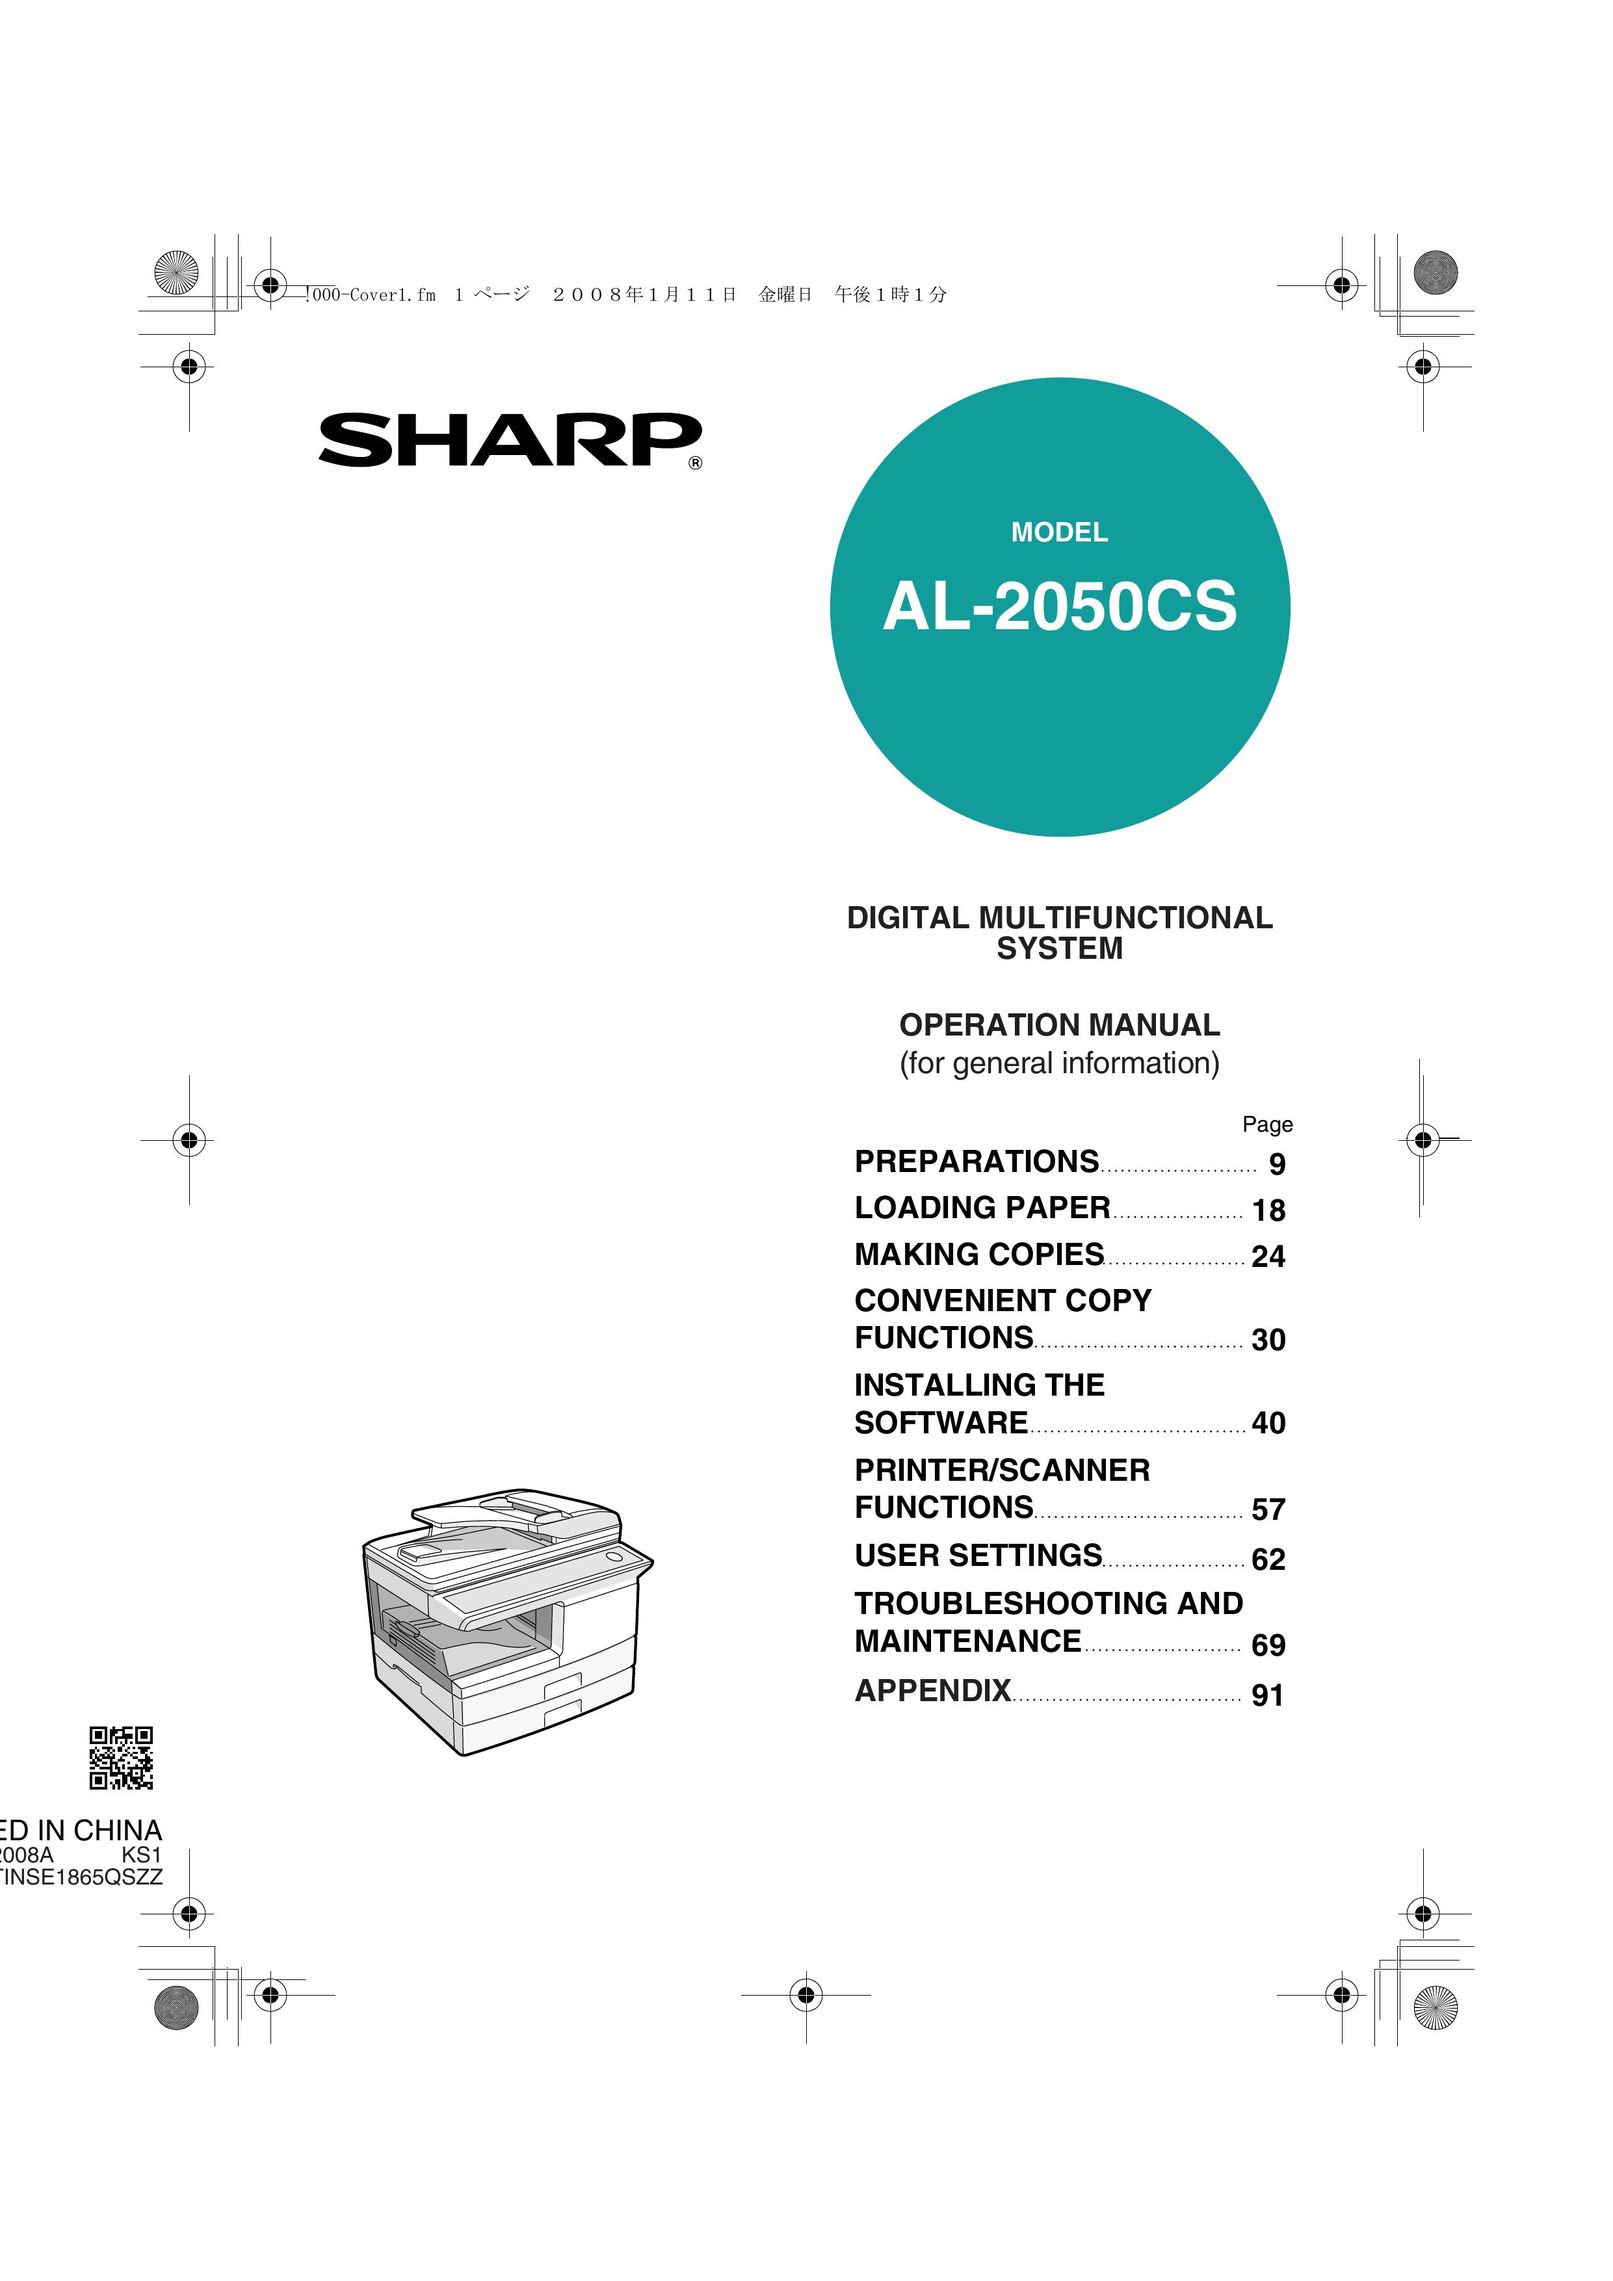 Sharp AL-2050CS Printer User Manual